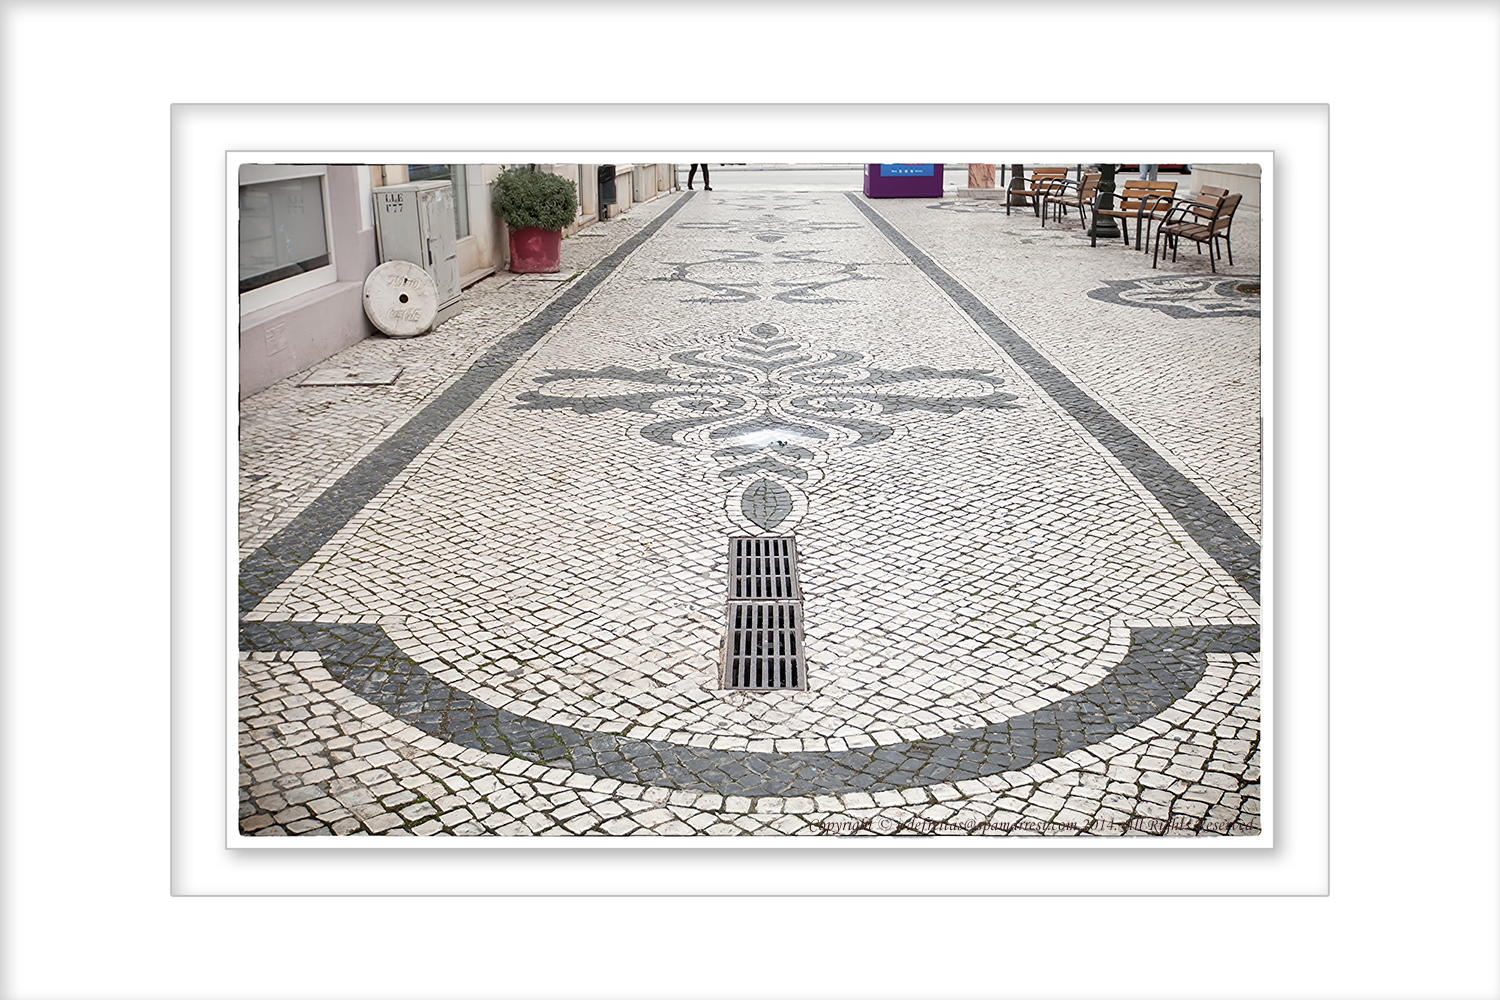 2014 - Calçada Portuguesa (cobblestones) - Loulé, Algarve - Portugal